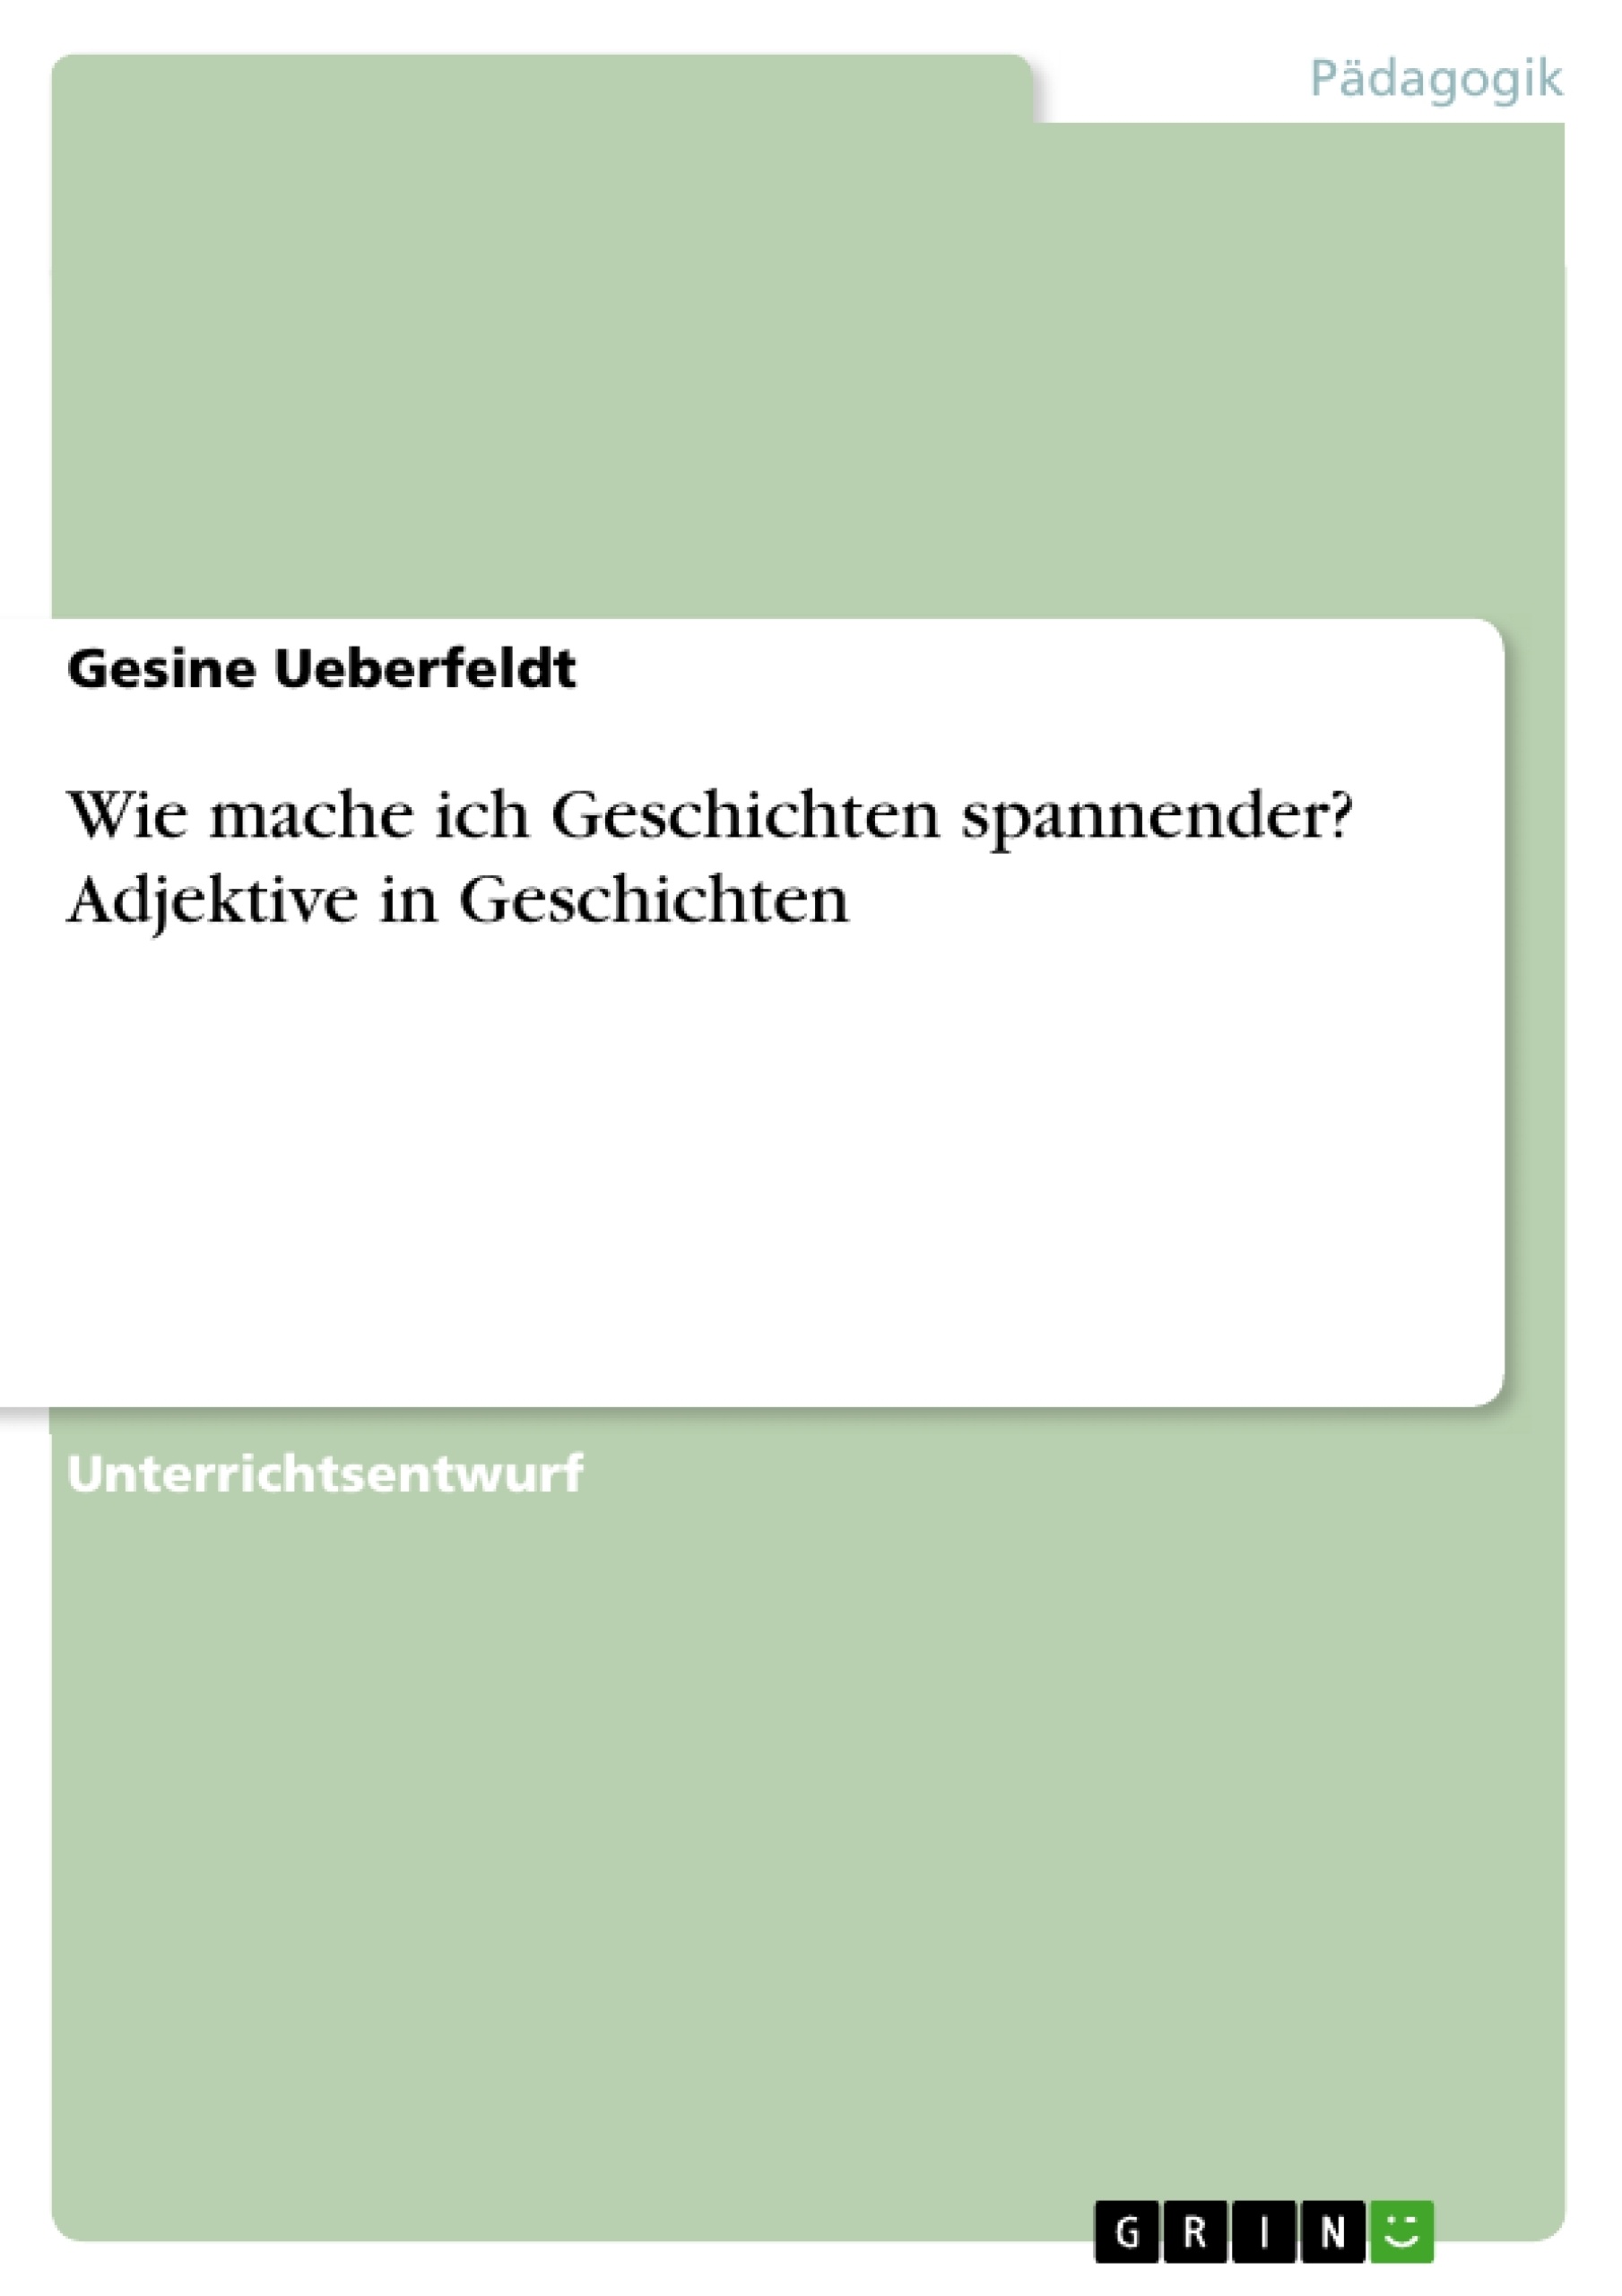 Título: Wie mache ich Geschichten spannender? Adjektive in Geschichten (Deutsch, 3. Klasse)